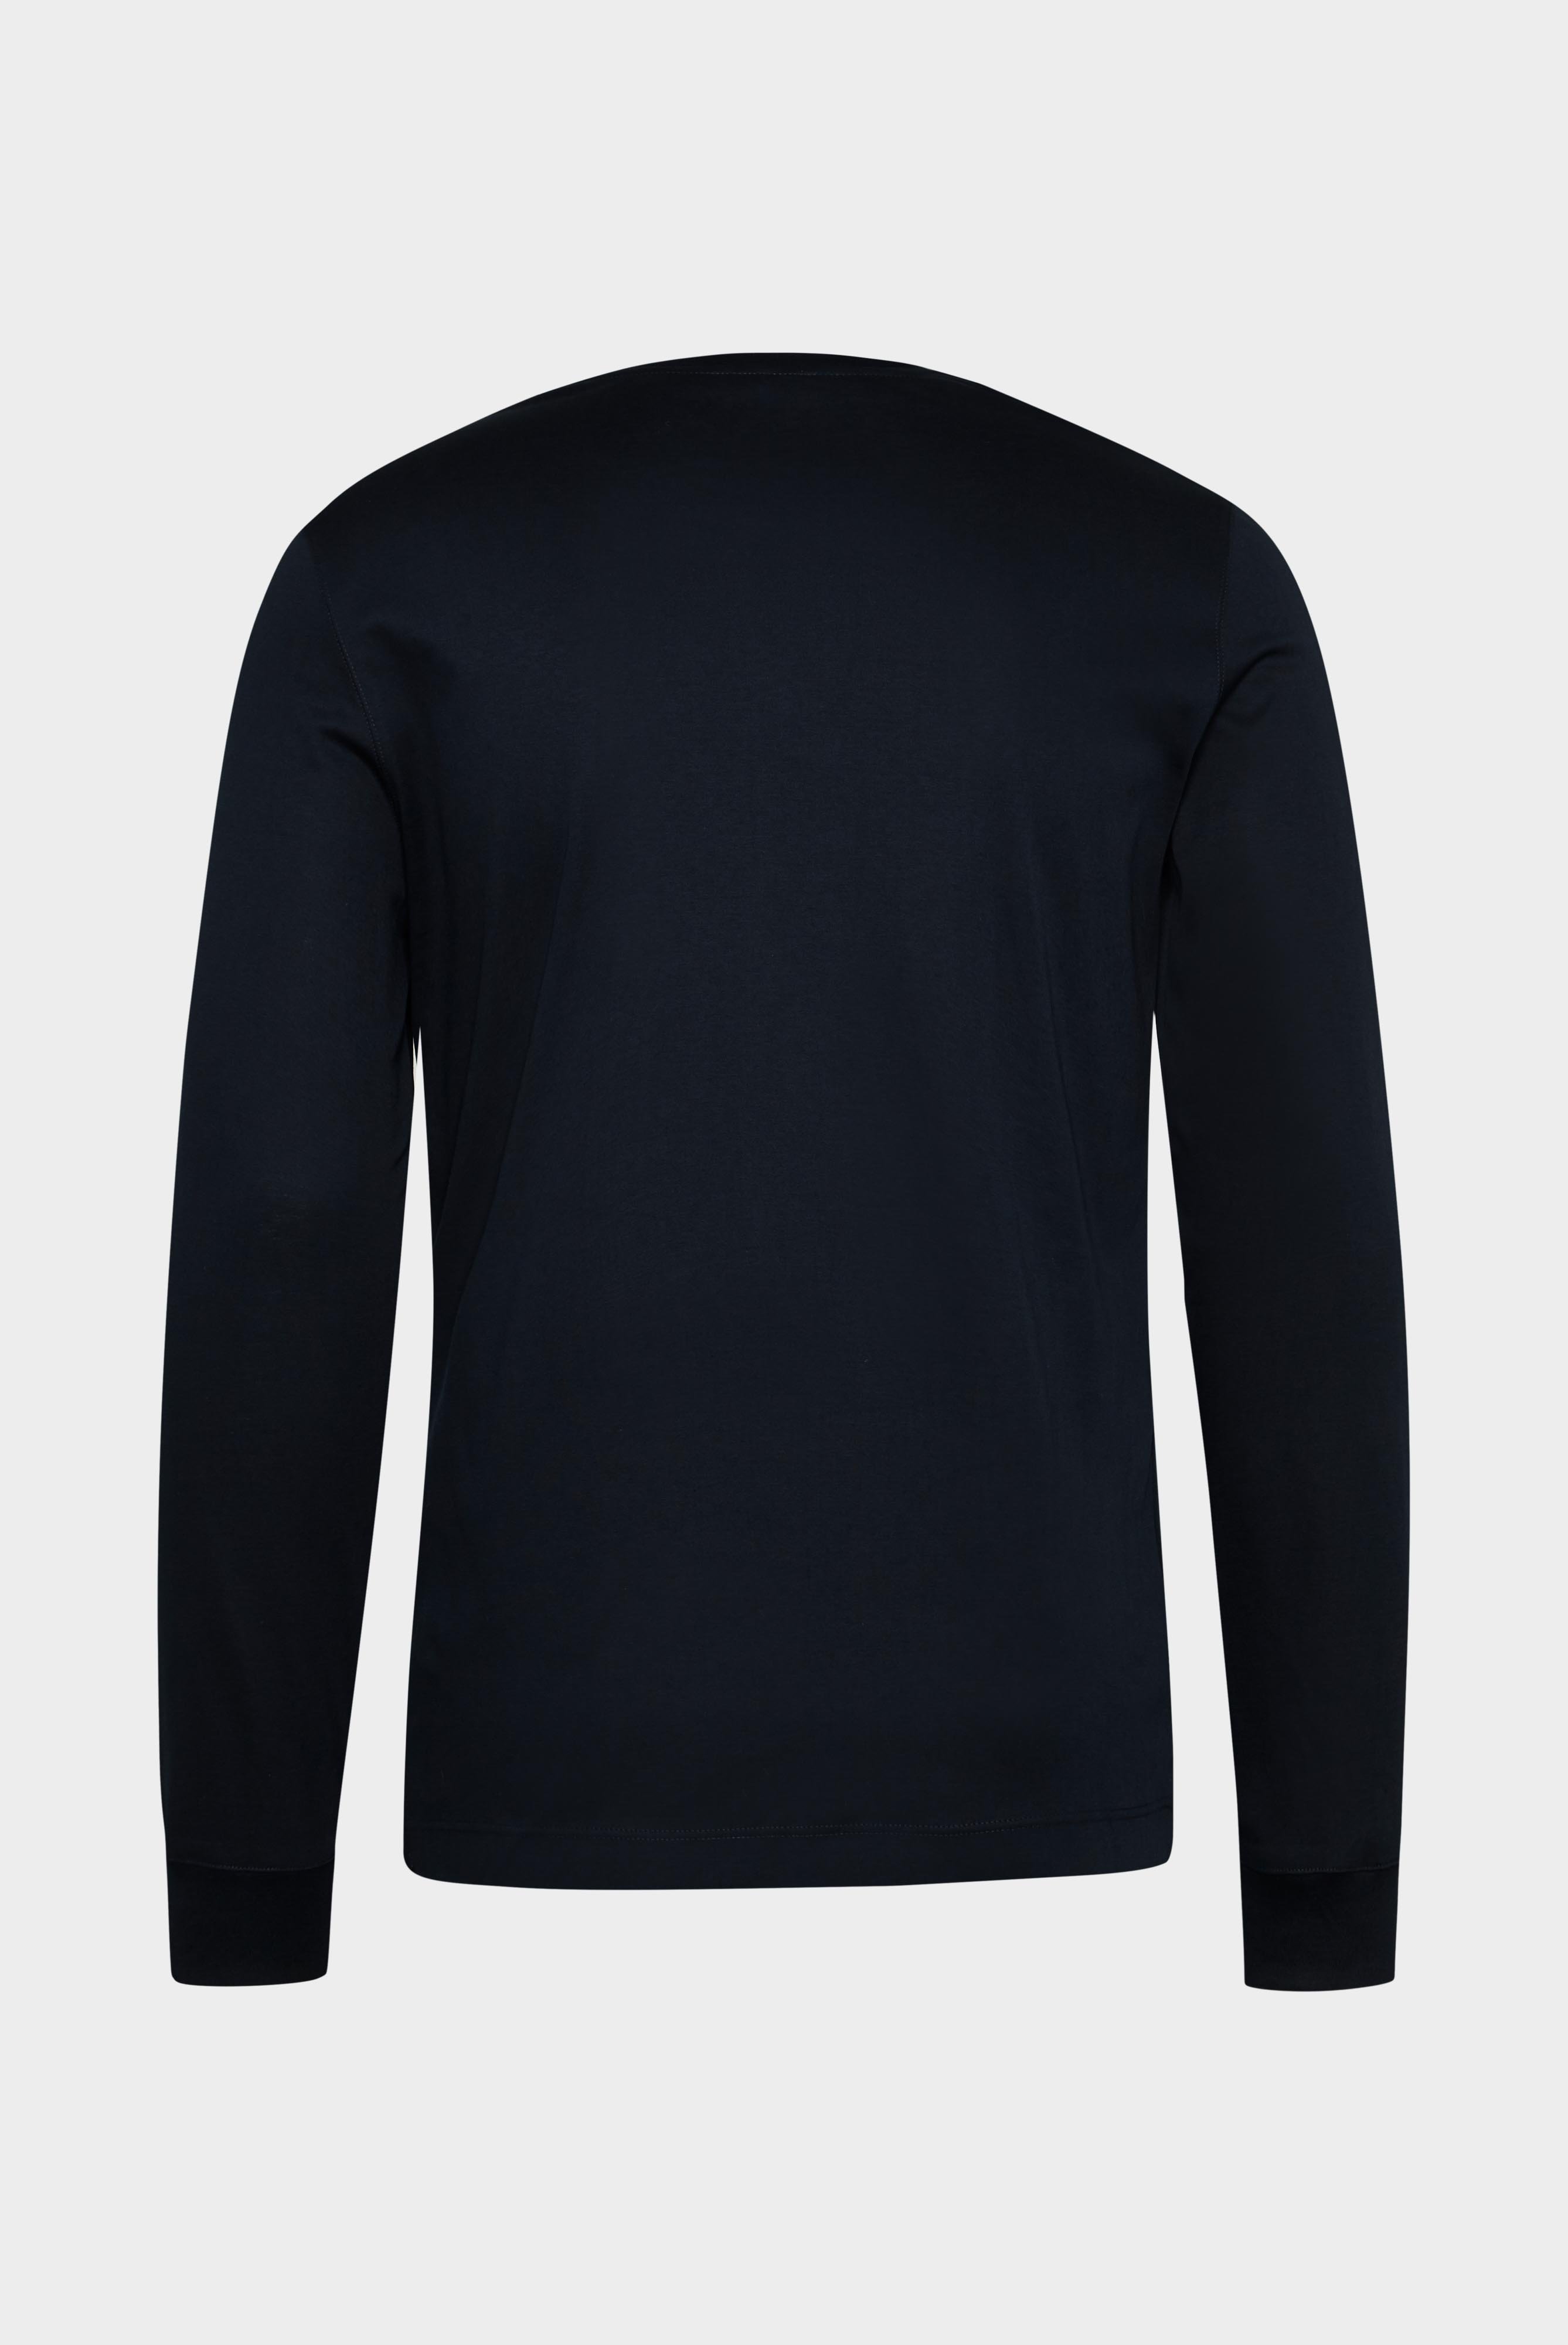 T-Shirts+Longsleeve Swiss Cotton Jersey Crew Neck T-Shirt+20.1718.UX.180031.790.XL